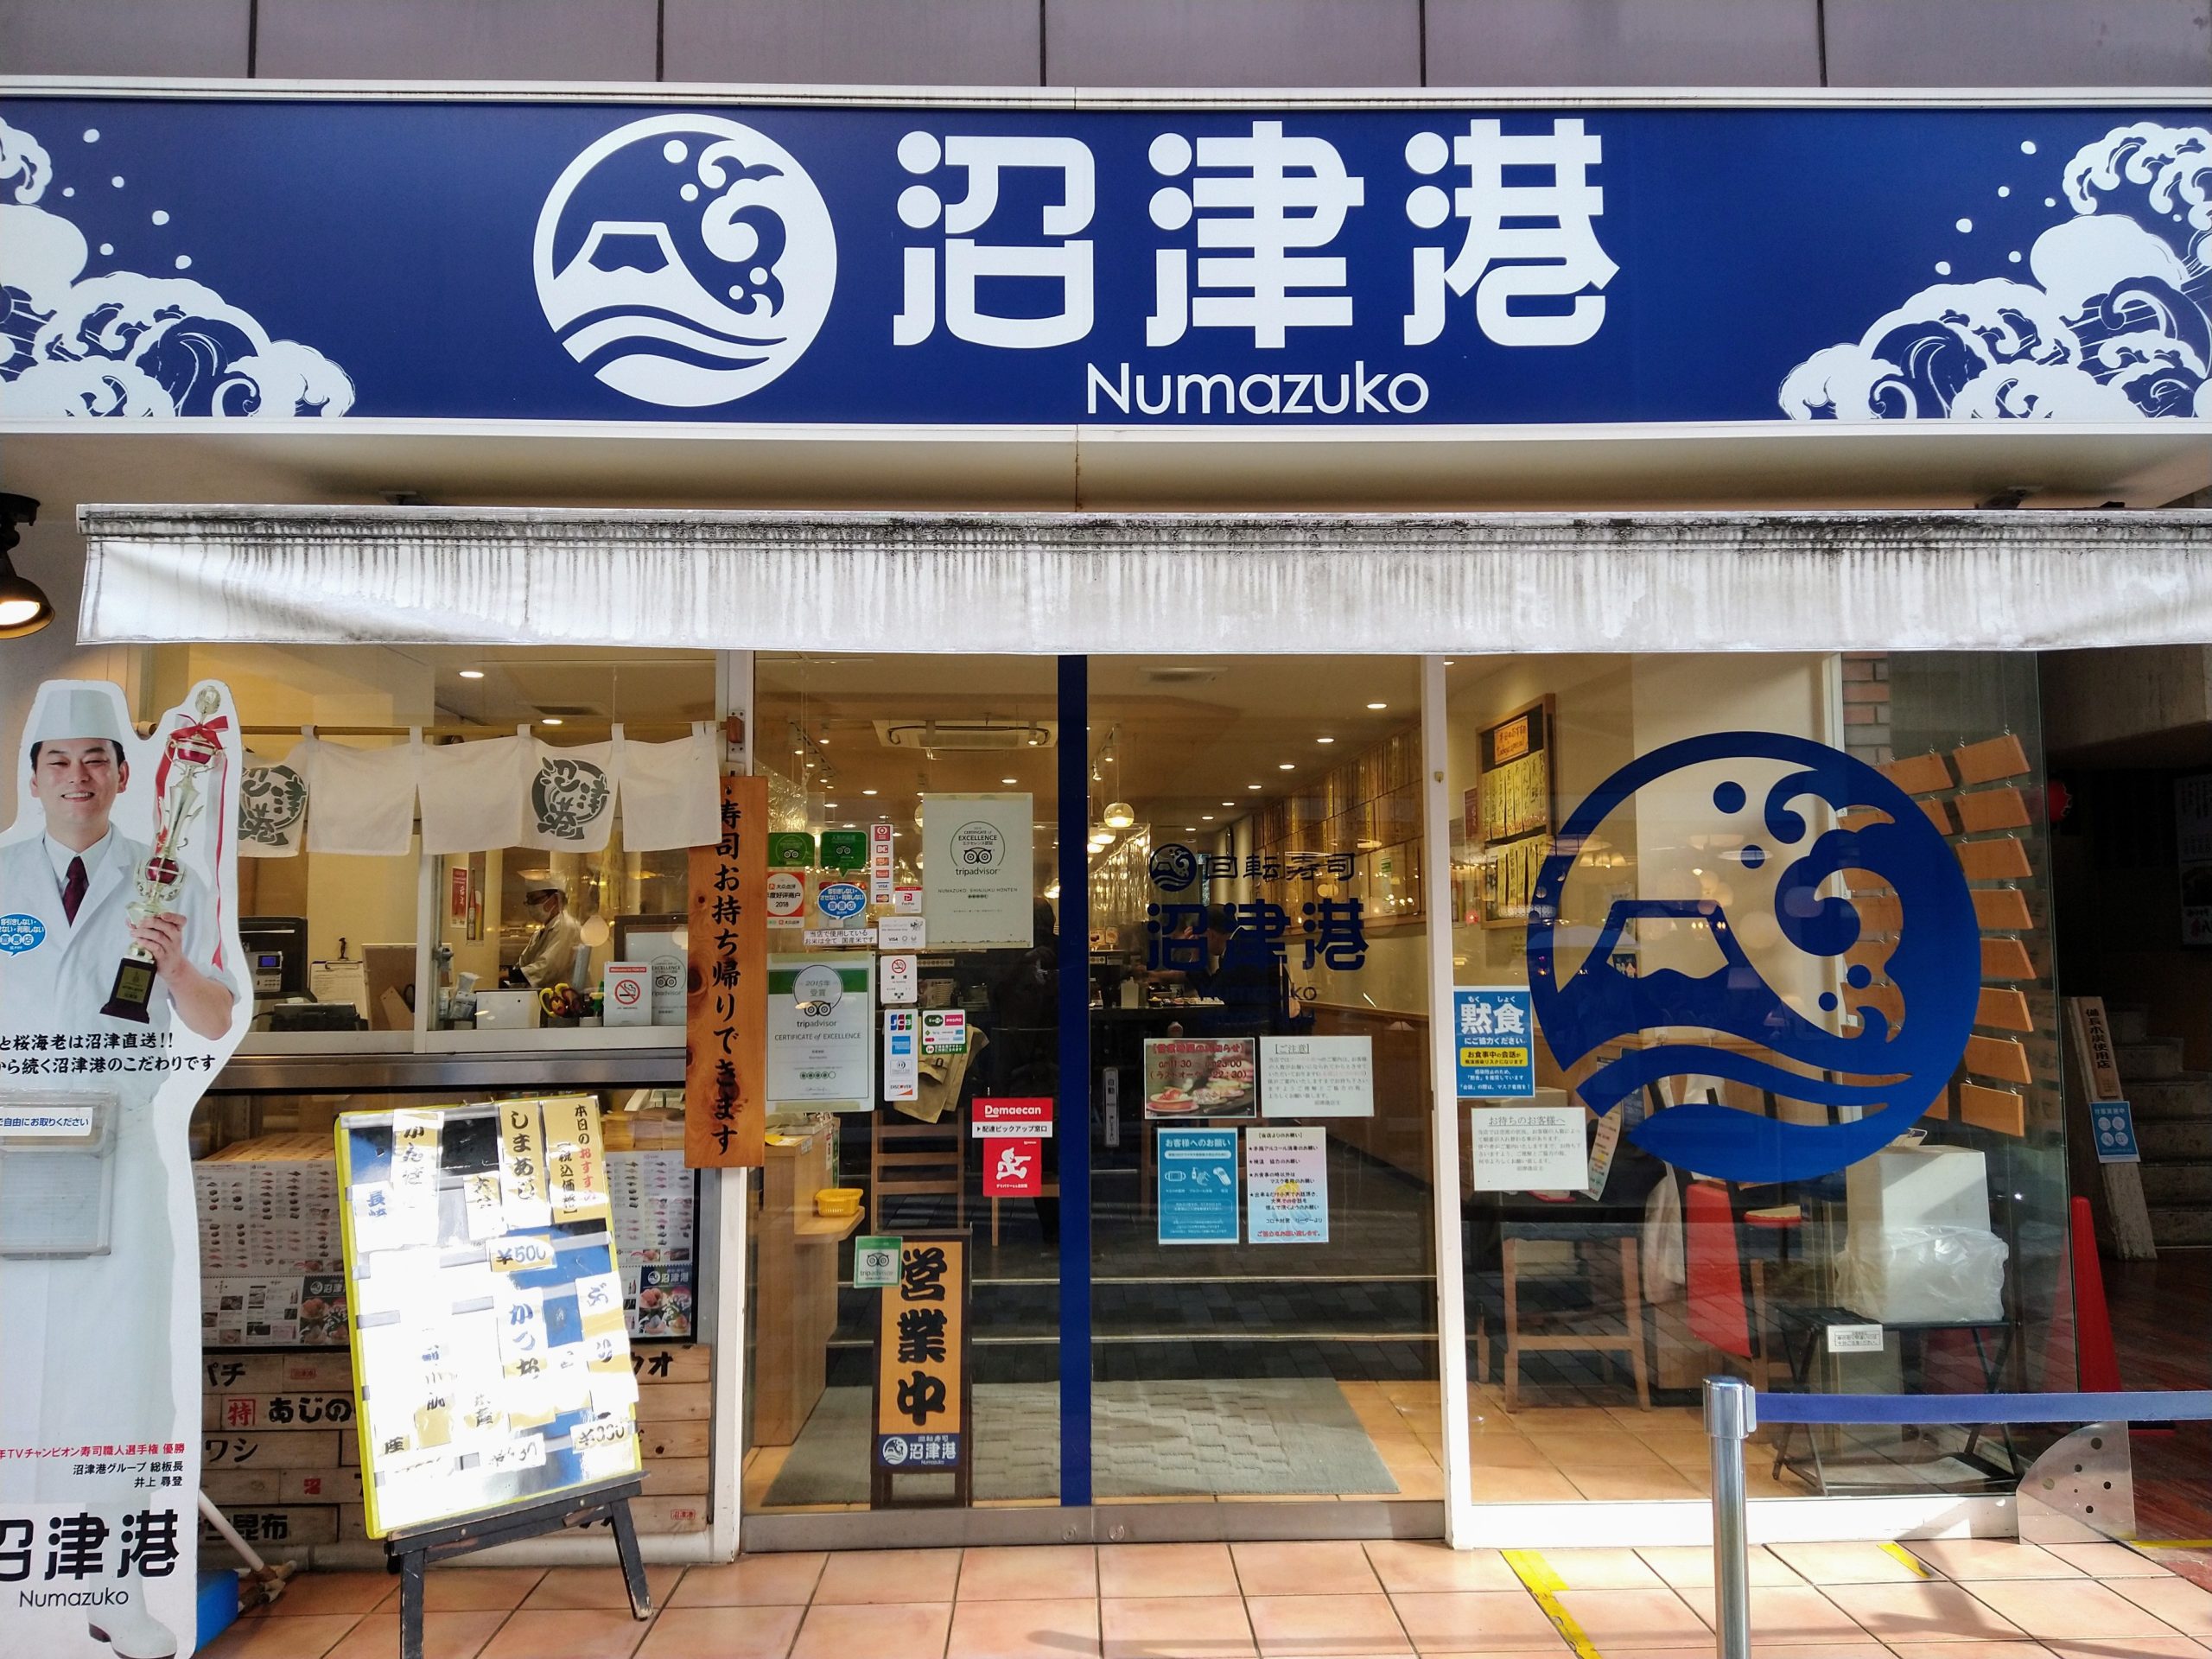 魚介類の素材と鮮度が売りの回転寿司